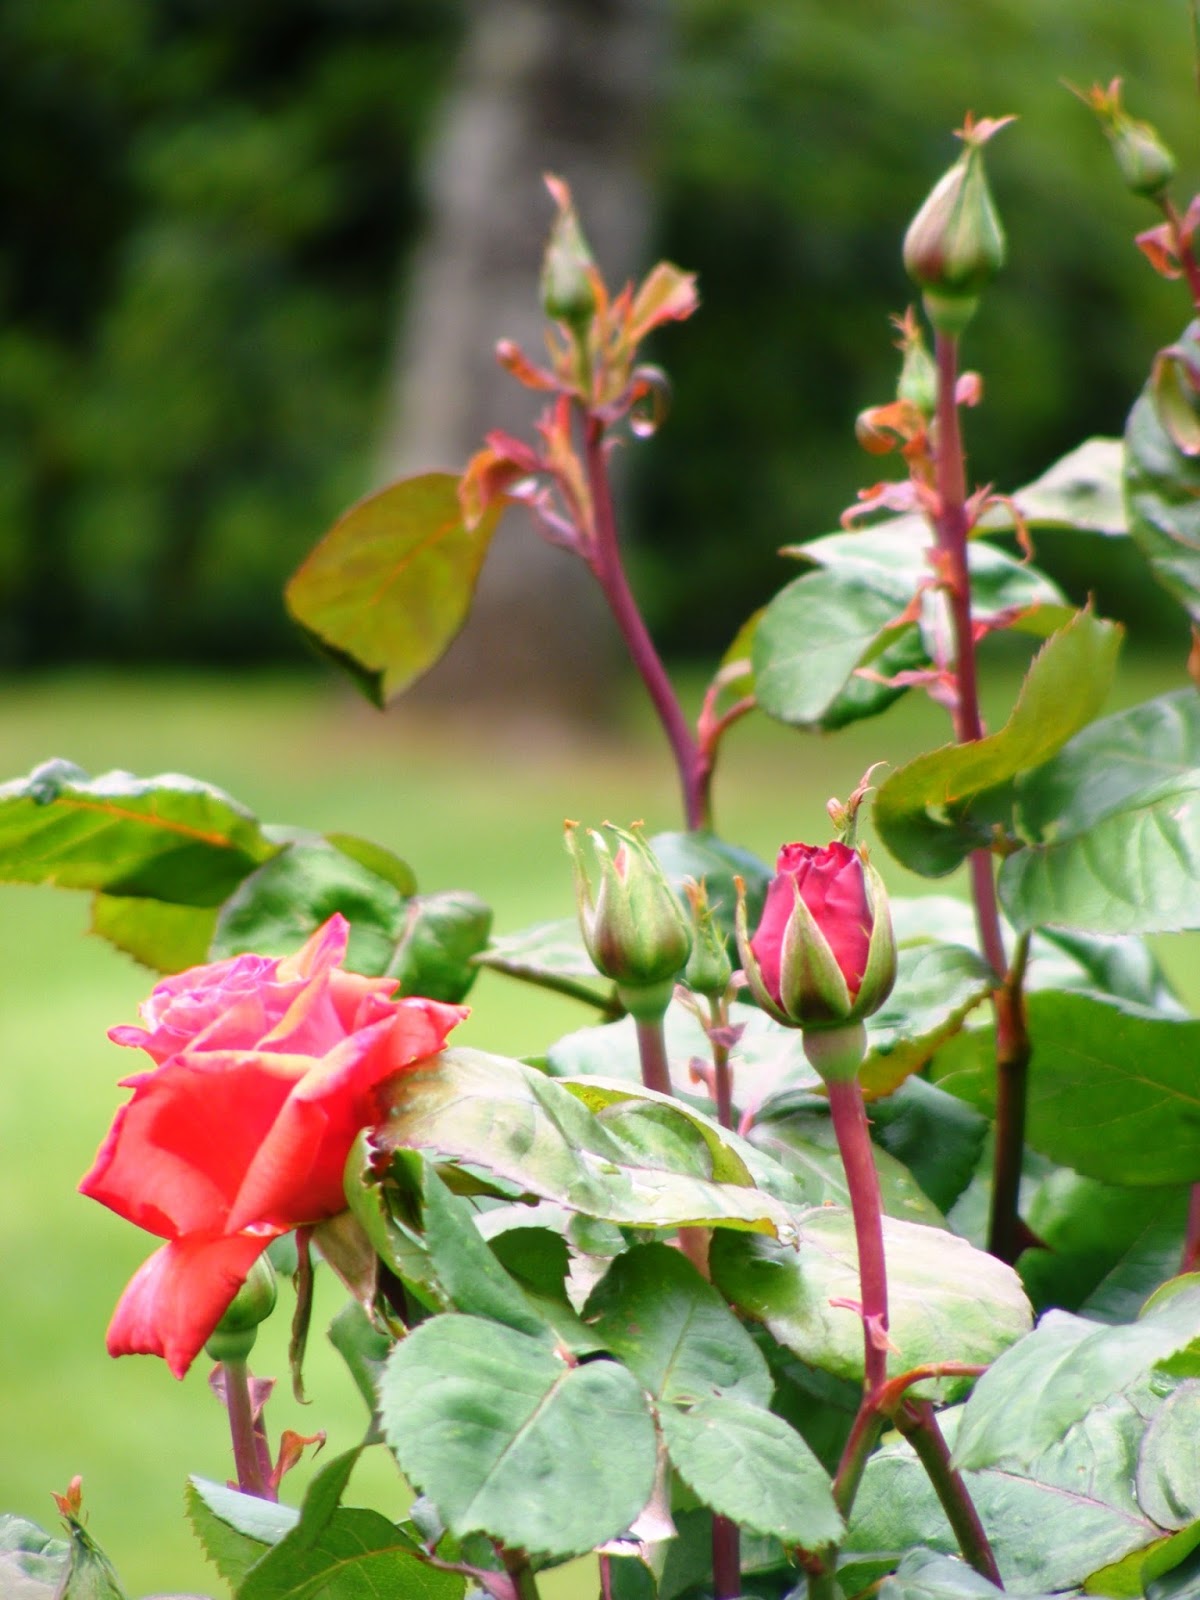 Dursley Garden - Wairarapa, NEW ZEALAND: Spring Roses at Dursley